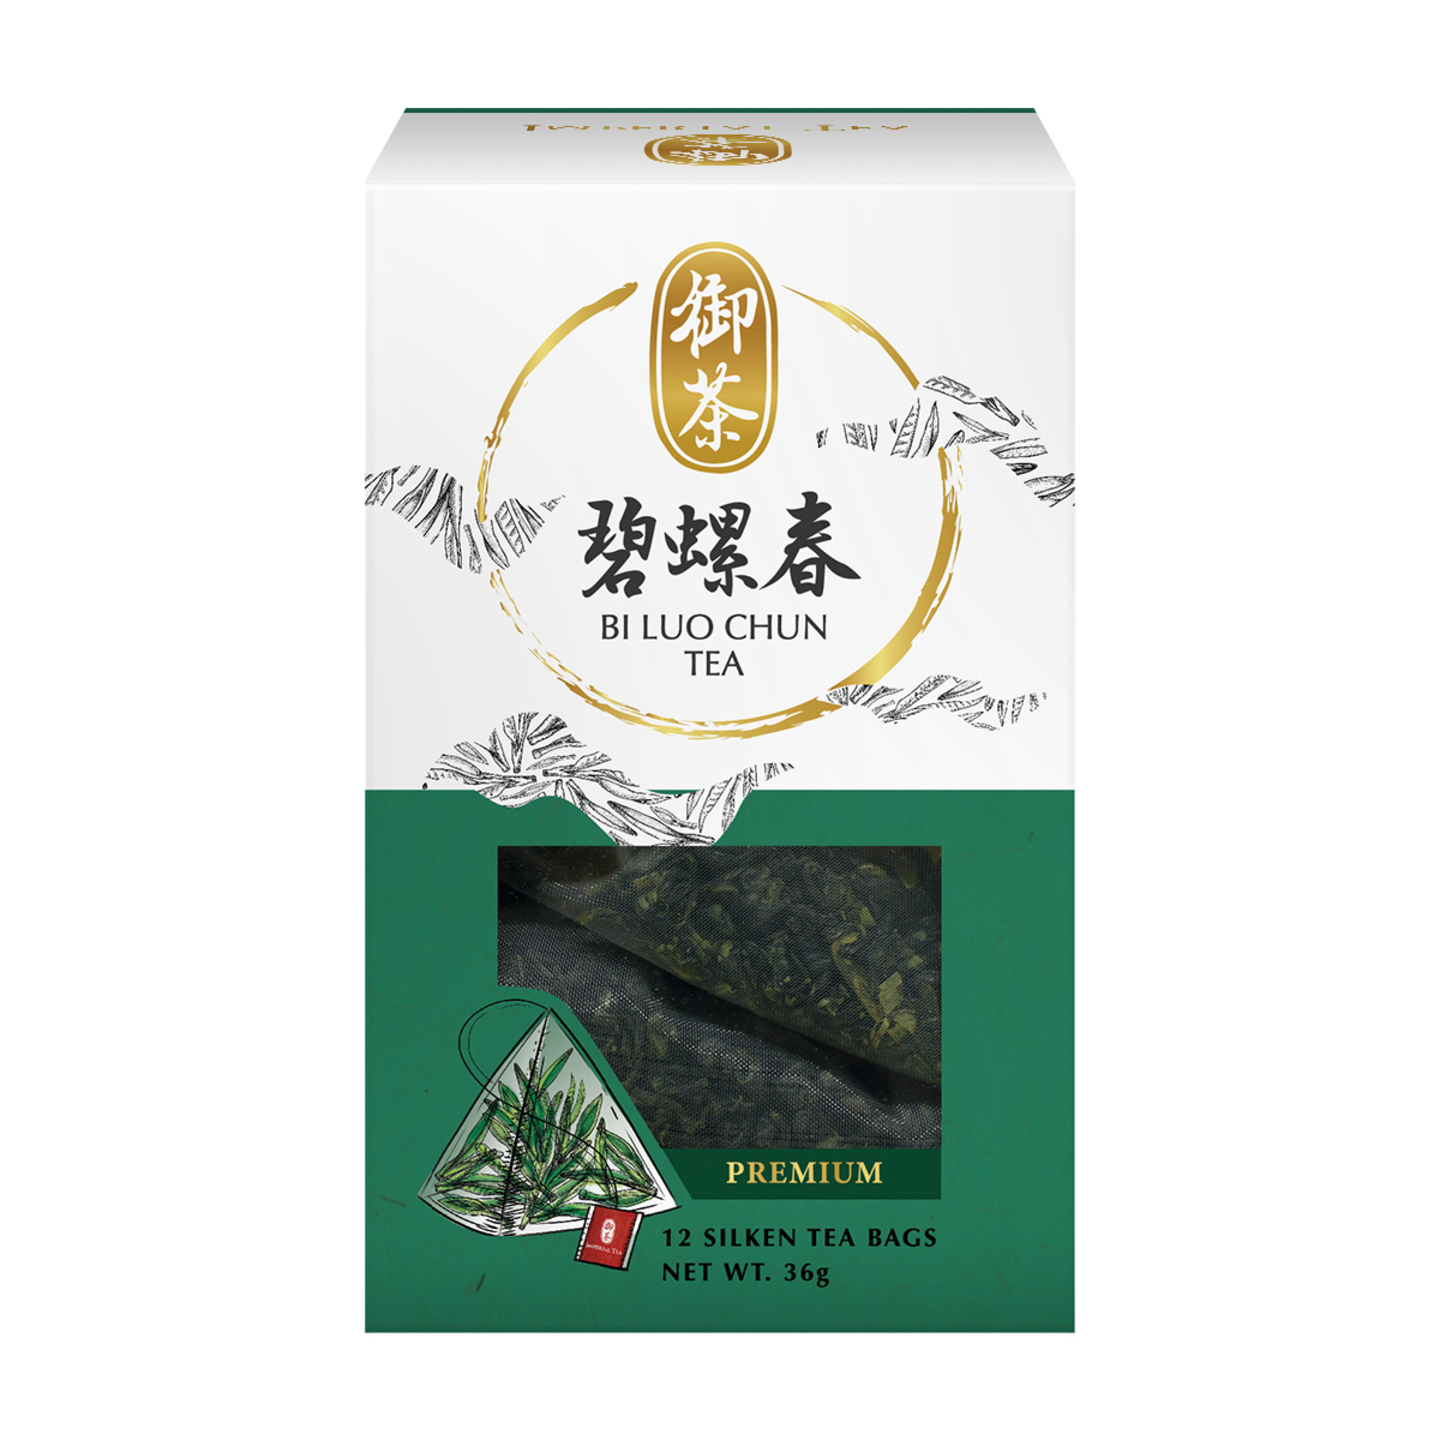 Bi Luo Chun Tea